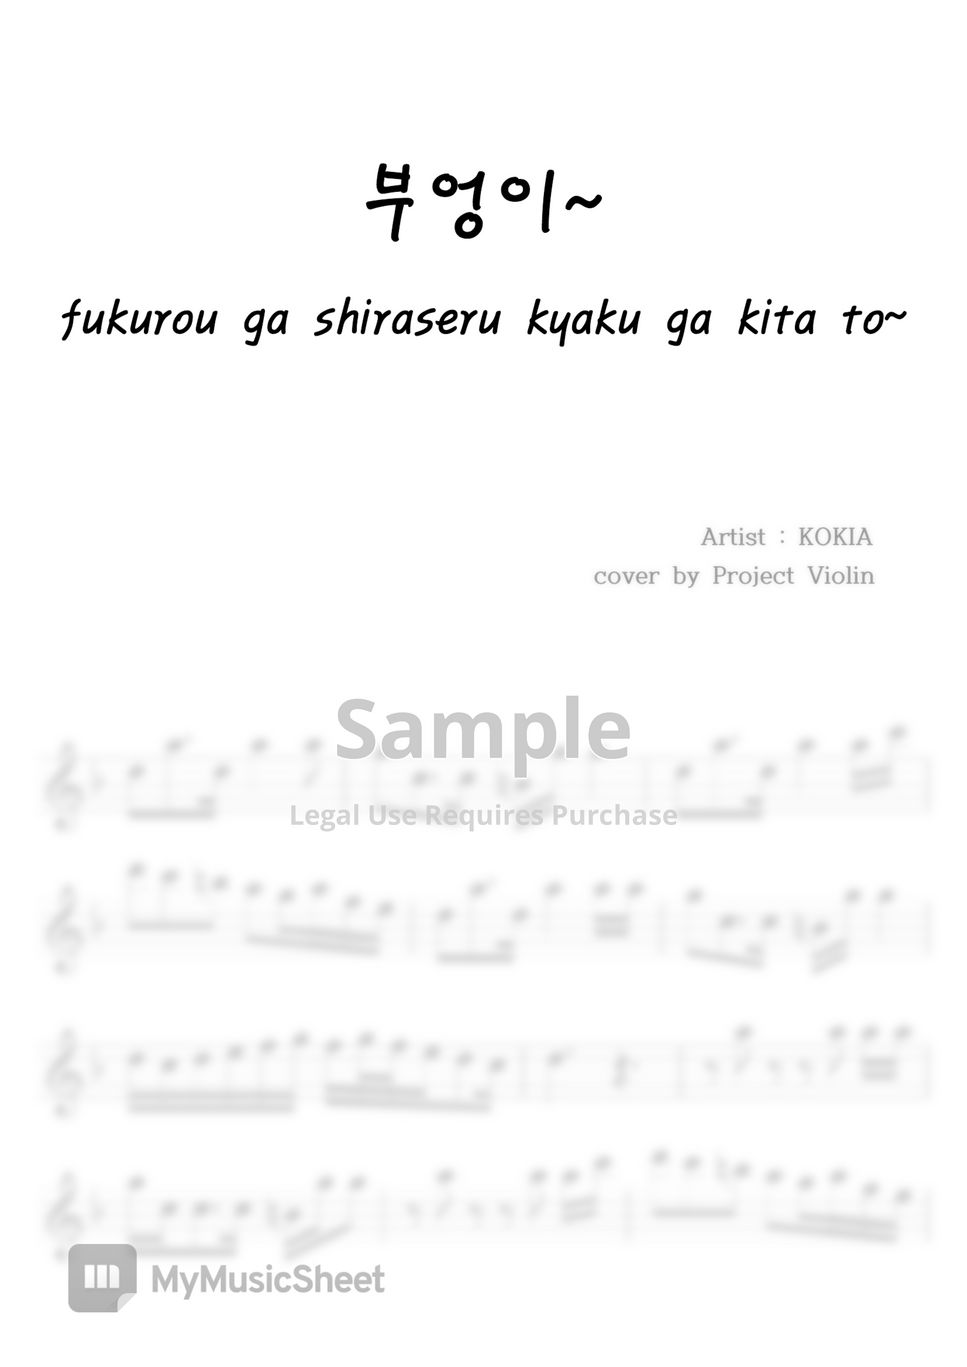 KOKIA - 부엉이~fukurou ga shiraseru kyaku ga kita to~ by Project Violin